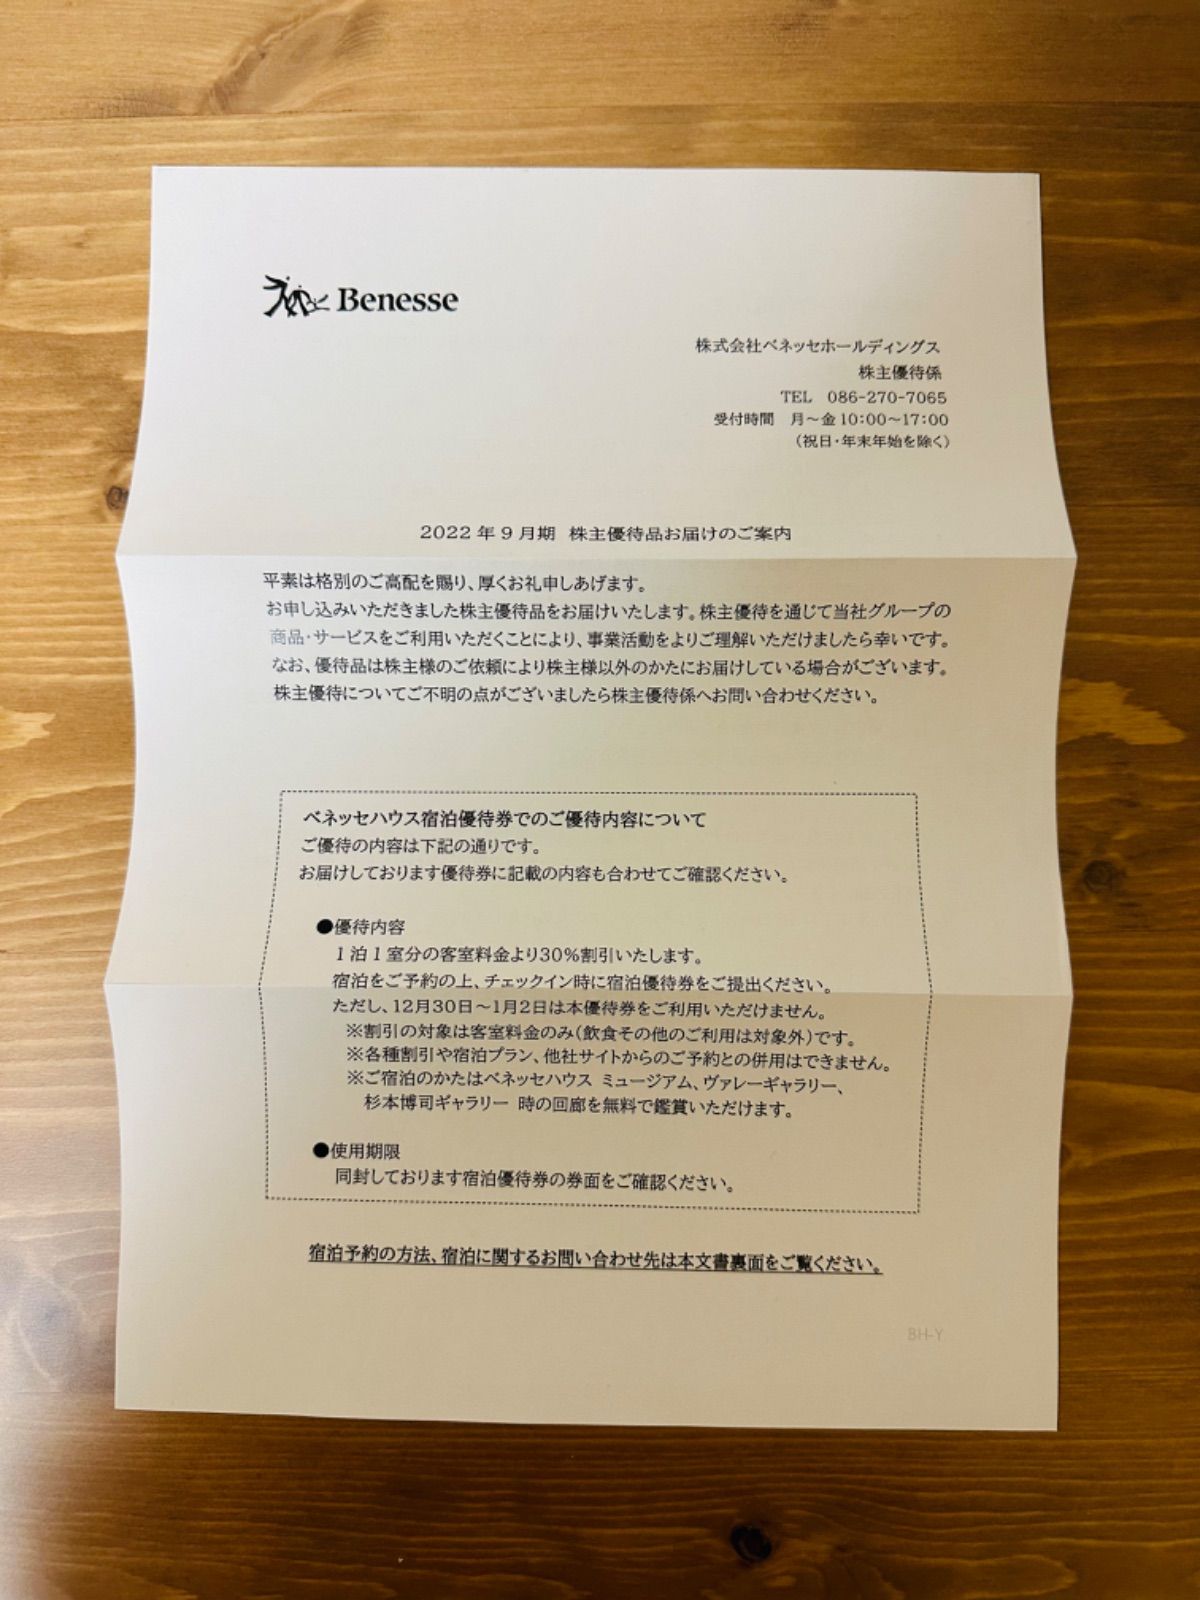 日本最大の ベネッセハウス 株主優待券 30%割引 宿泊割引券 ベネッセ